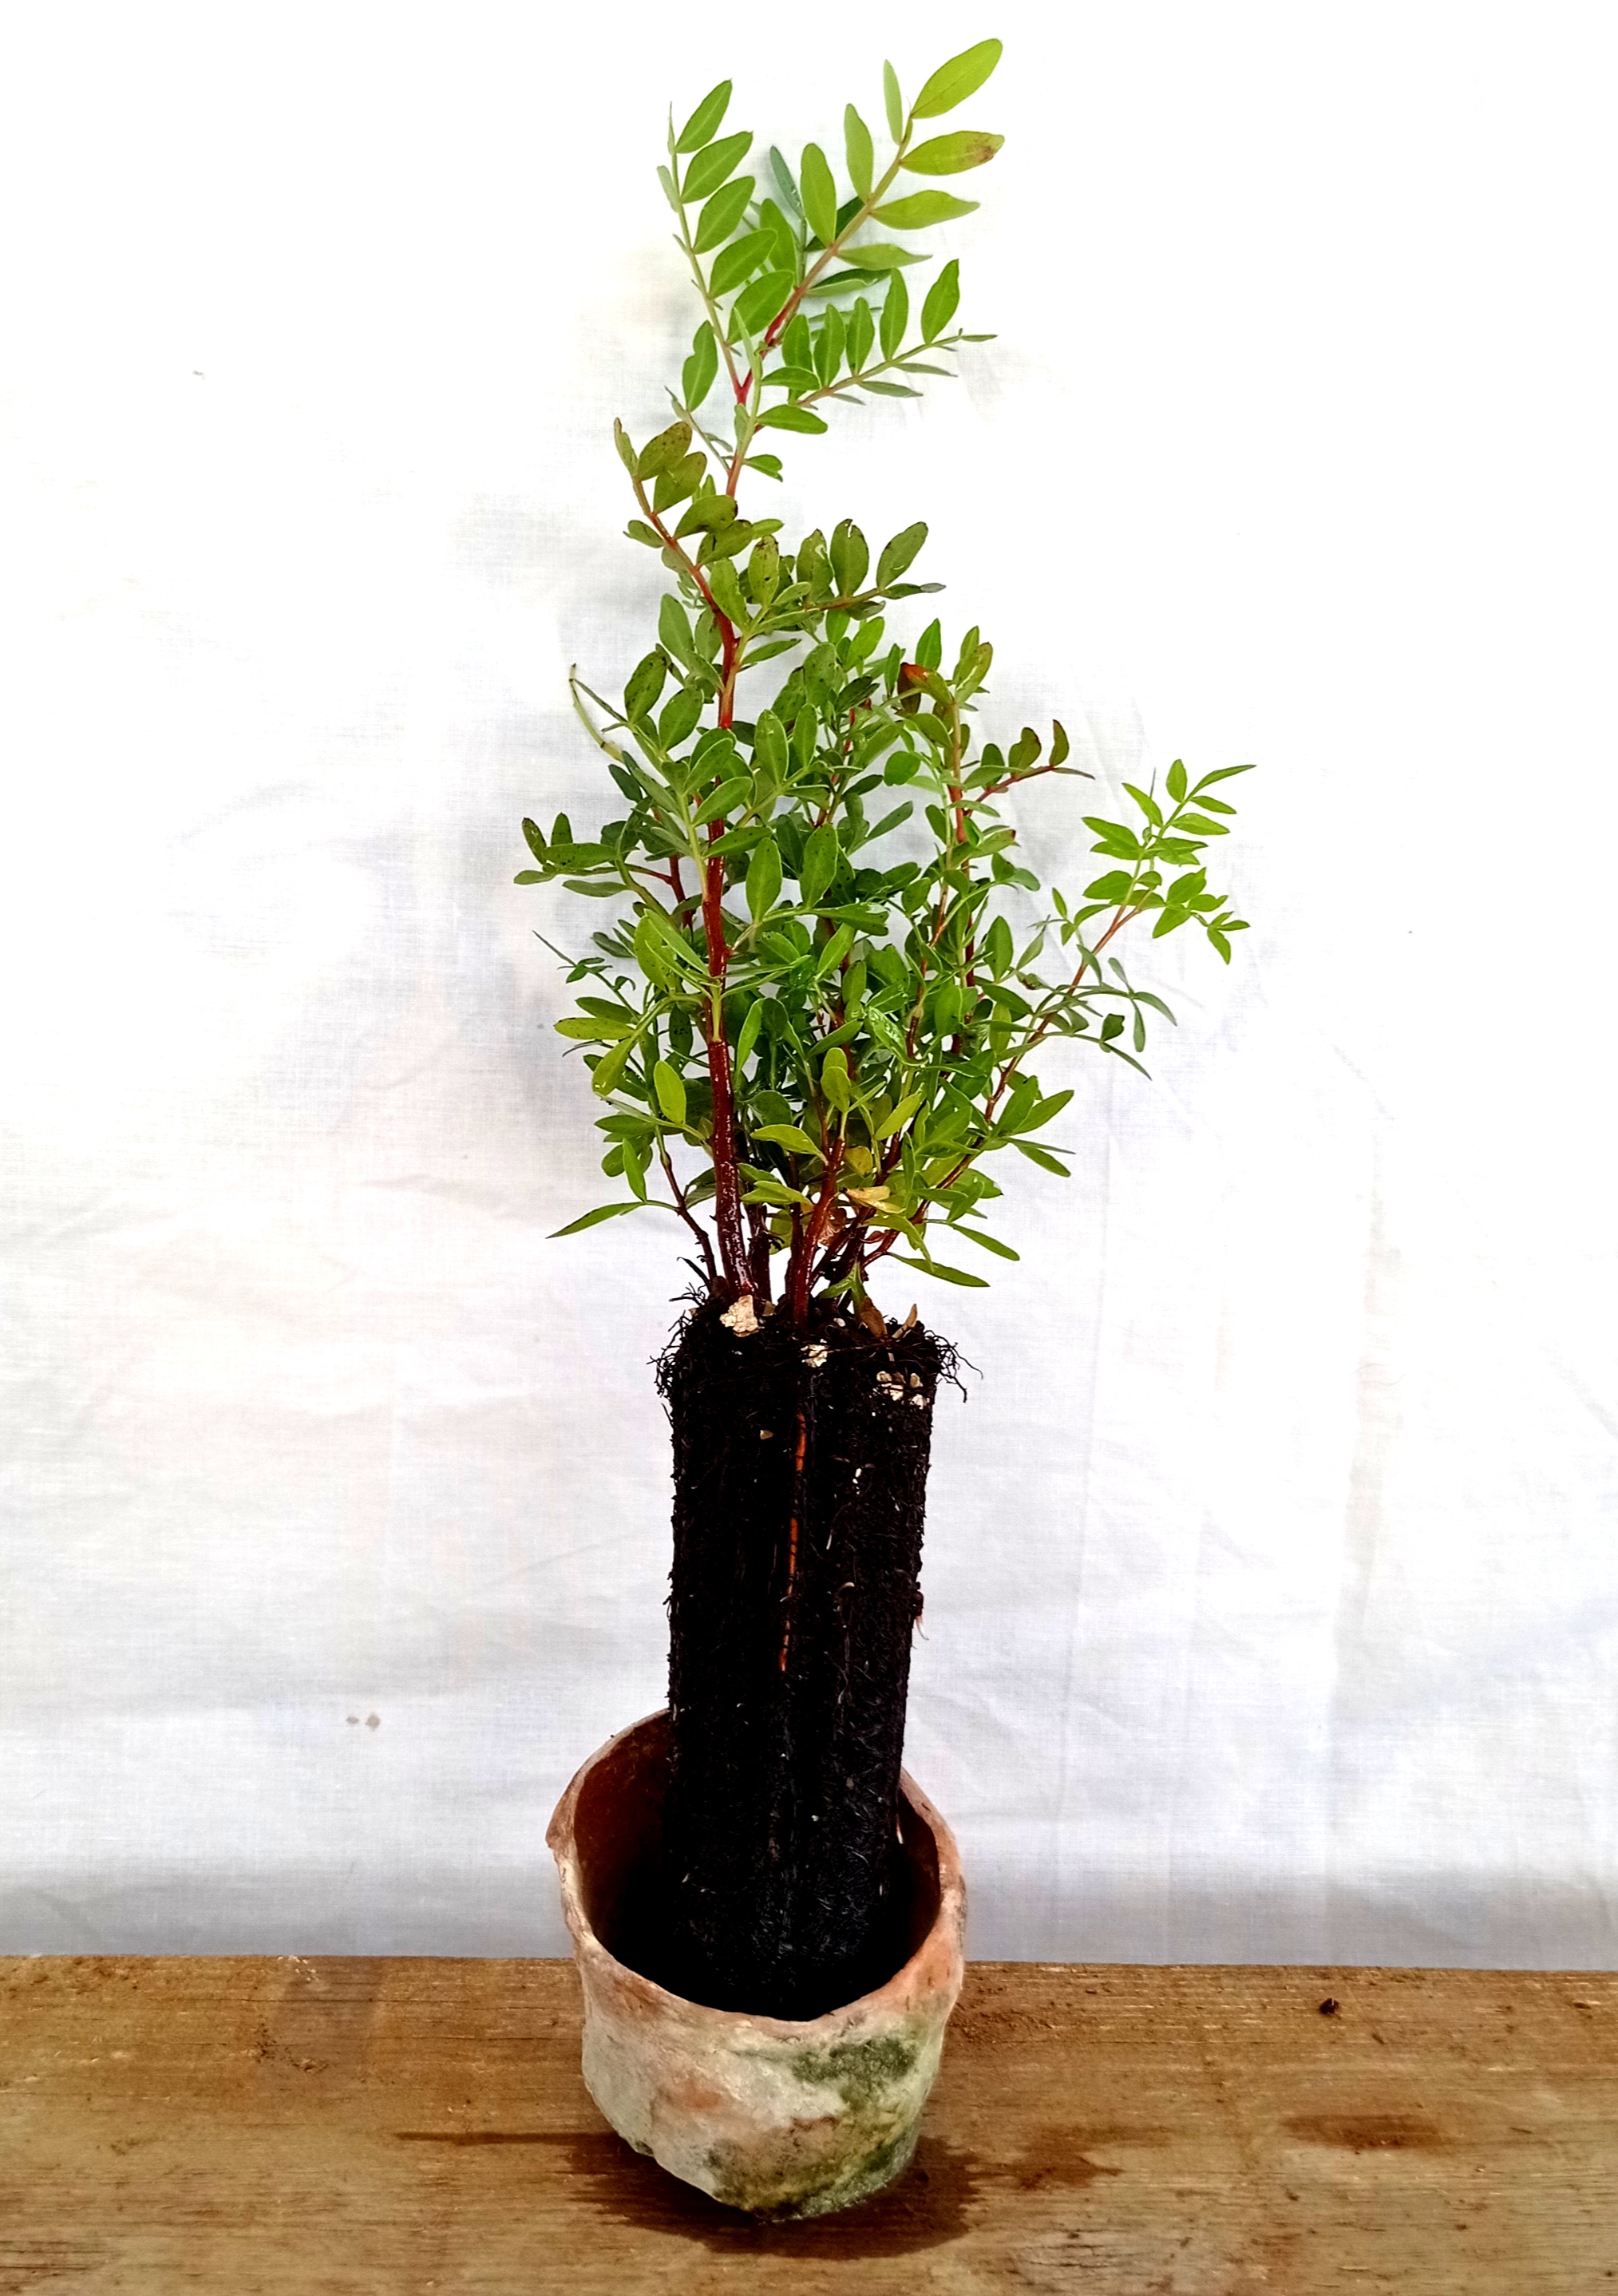 Planta de Lentisco - Pistacia lentiscus - 2 Años